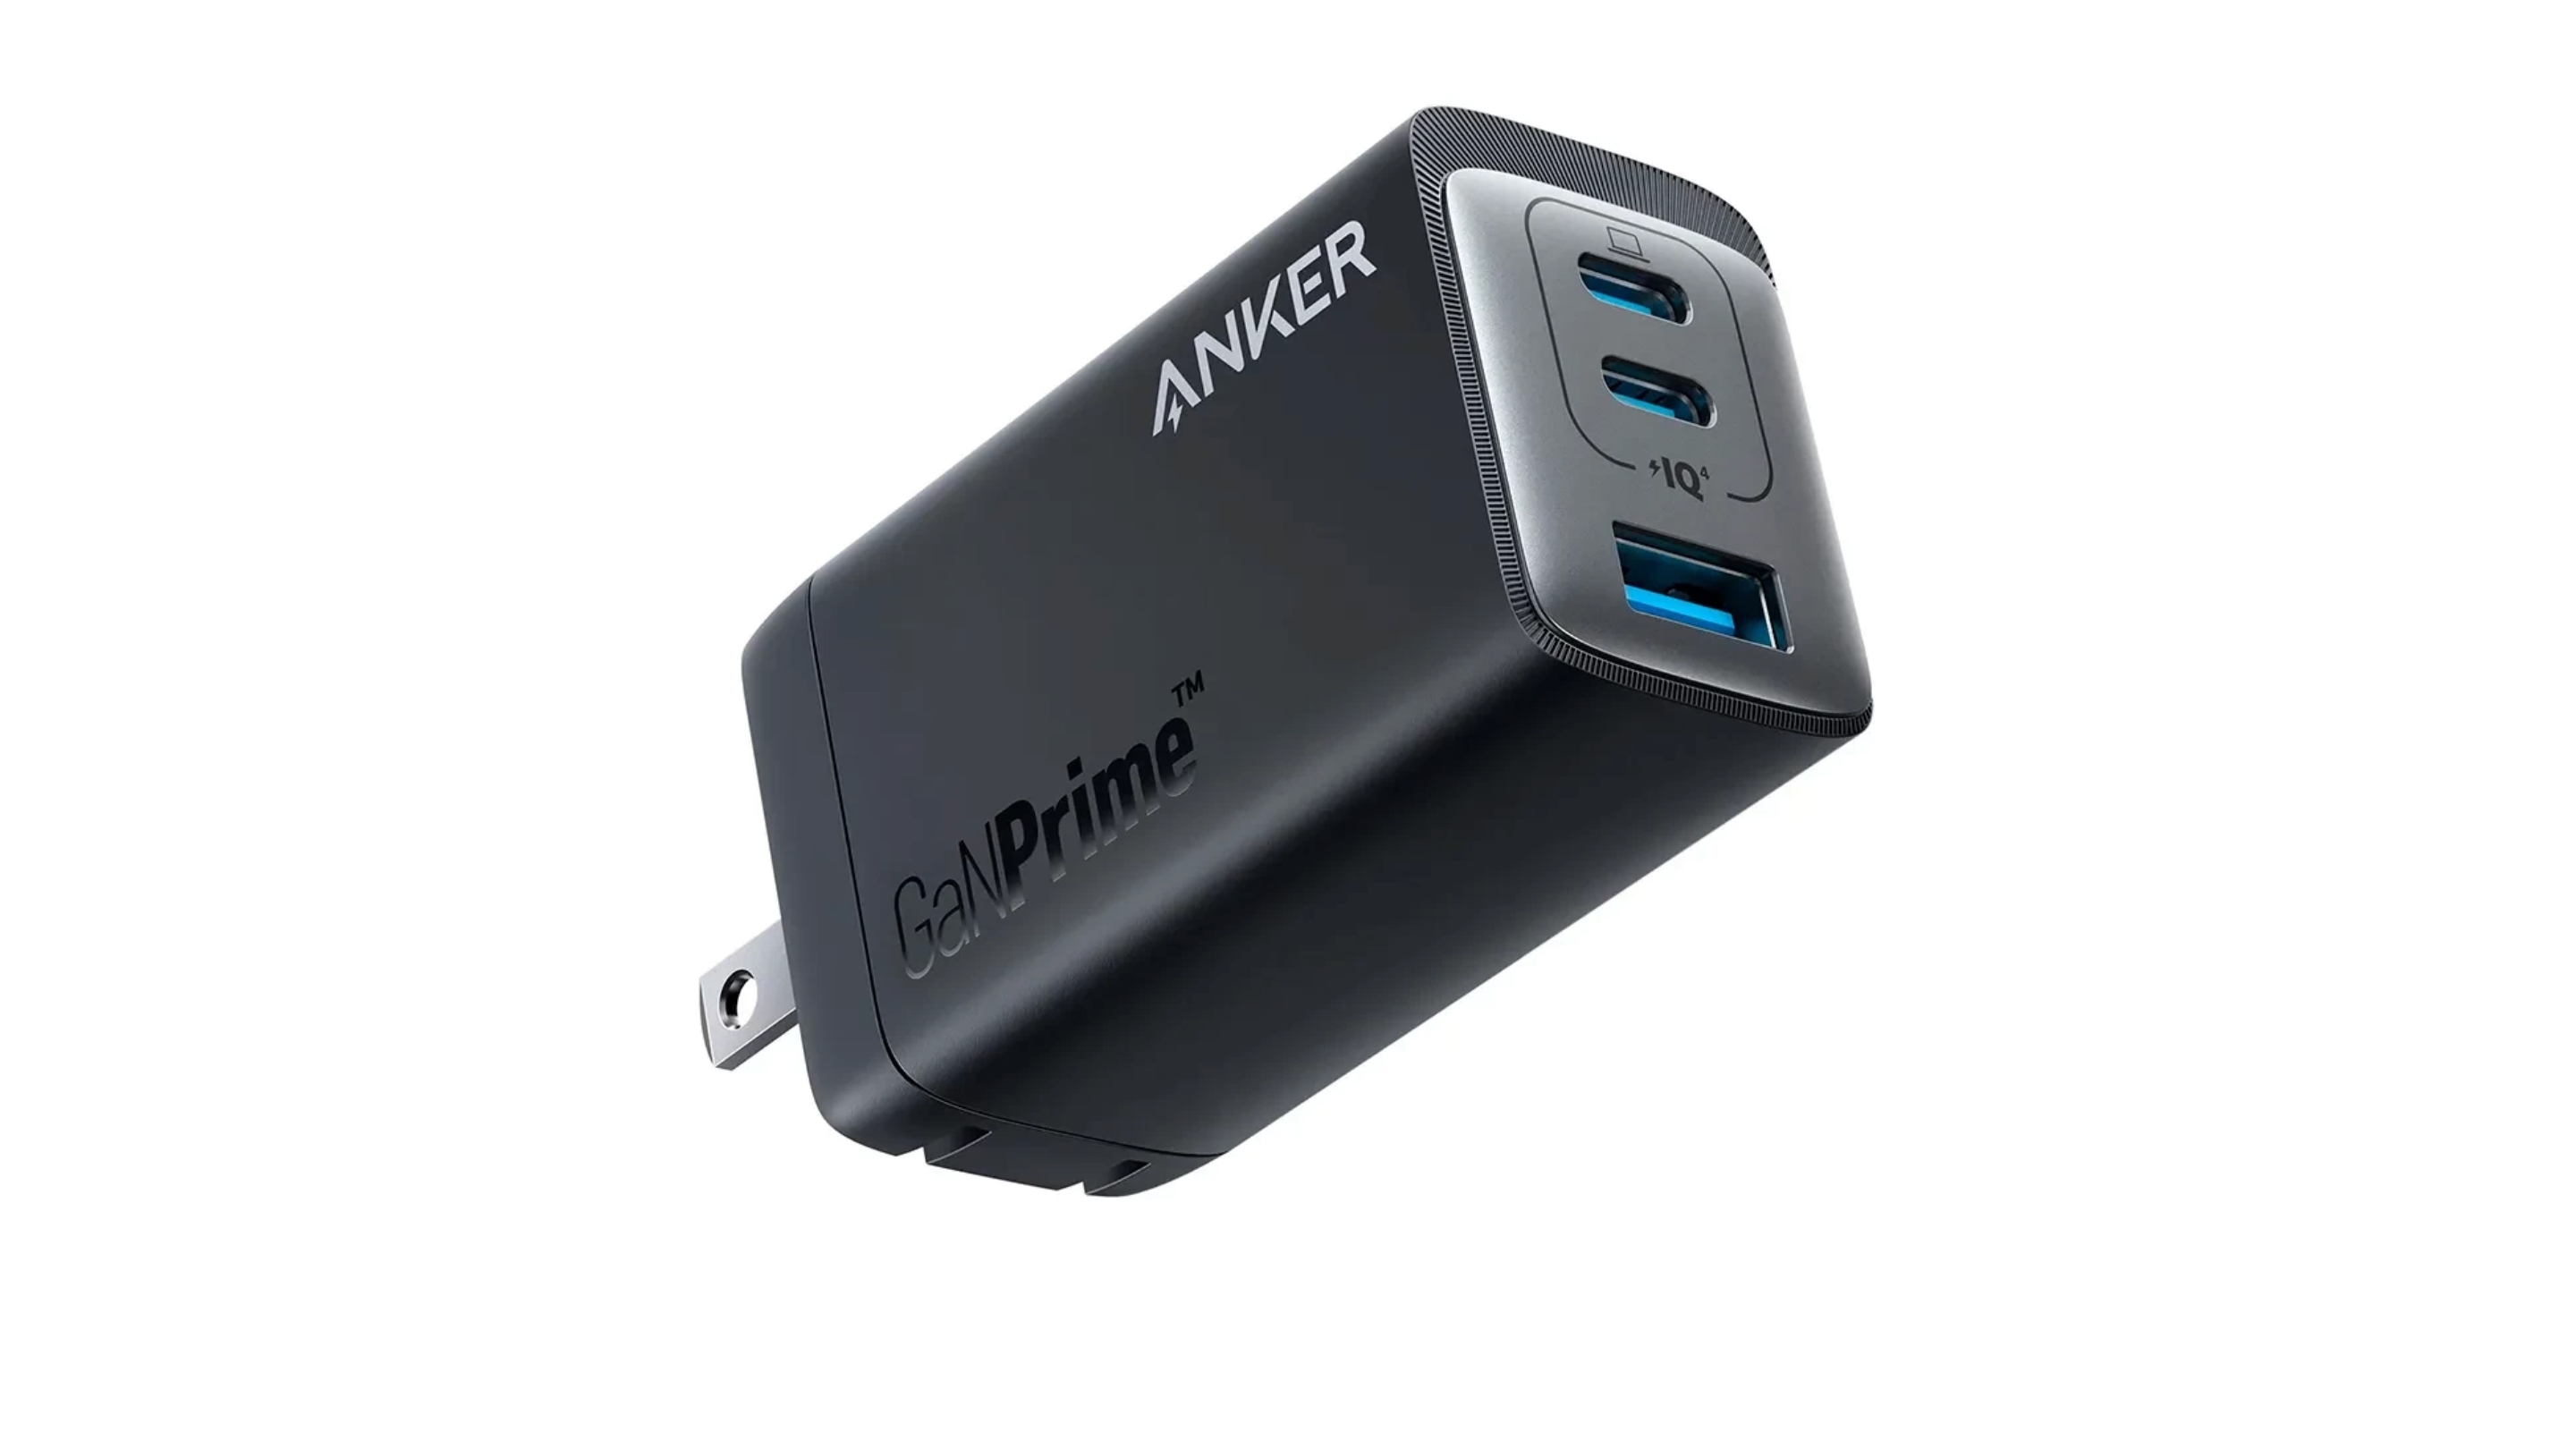 Anker 735 sur Amazon : un chargeur compact pour smartphone, tablette et ordinateur portable avec une puissance de 65W et trois ports USB pour 21$ de réduction.